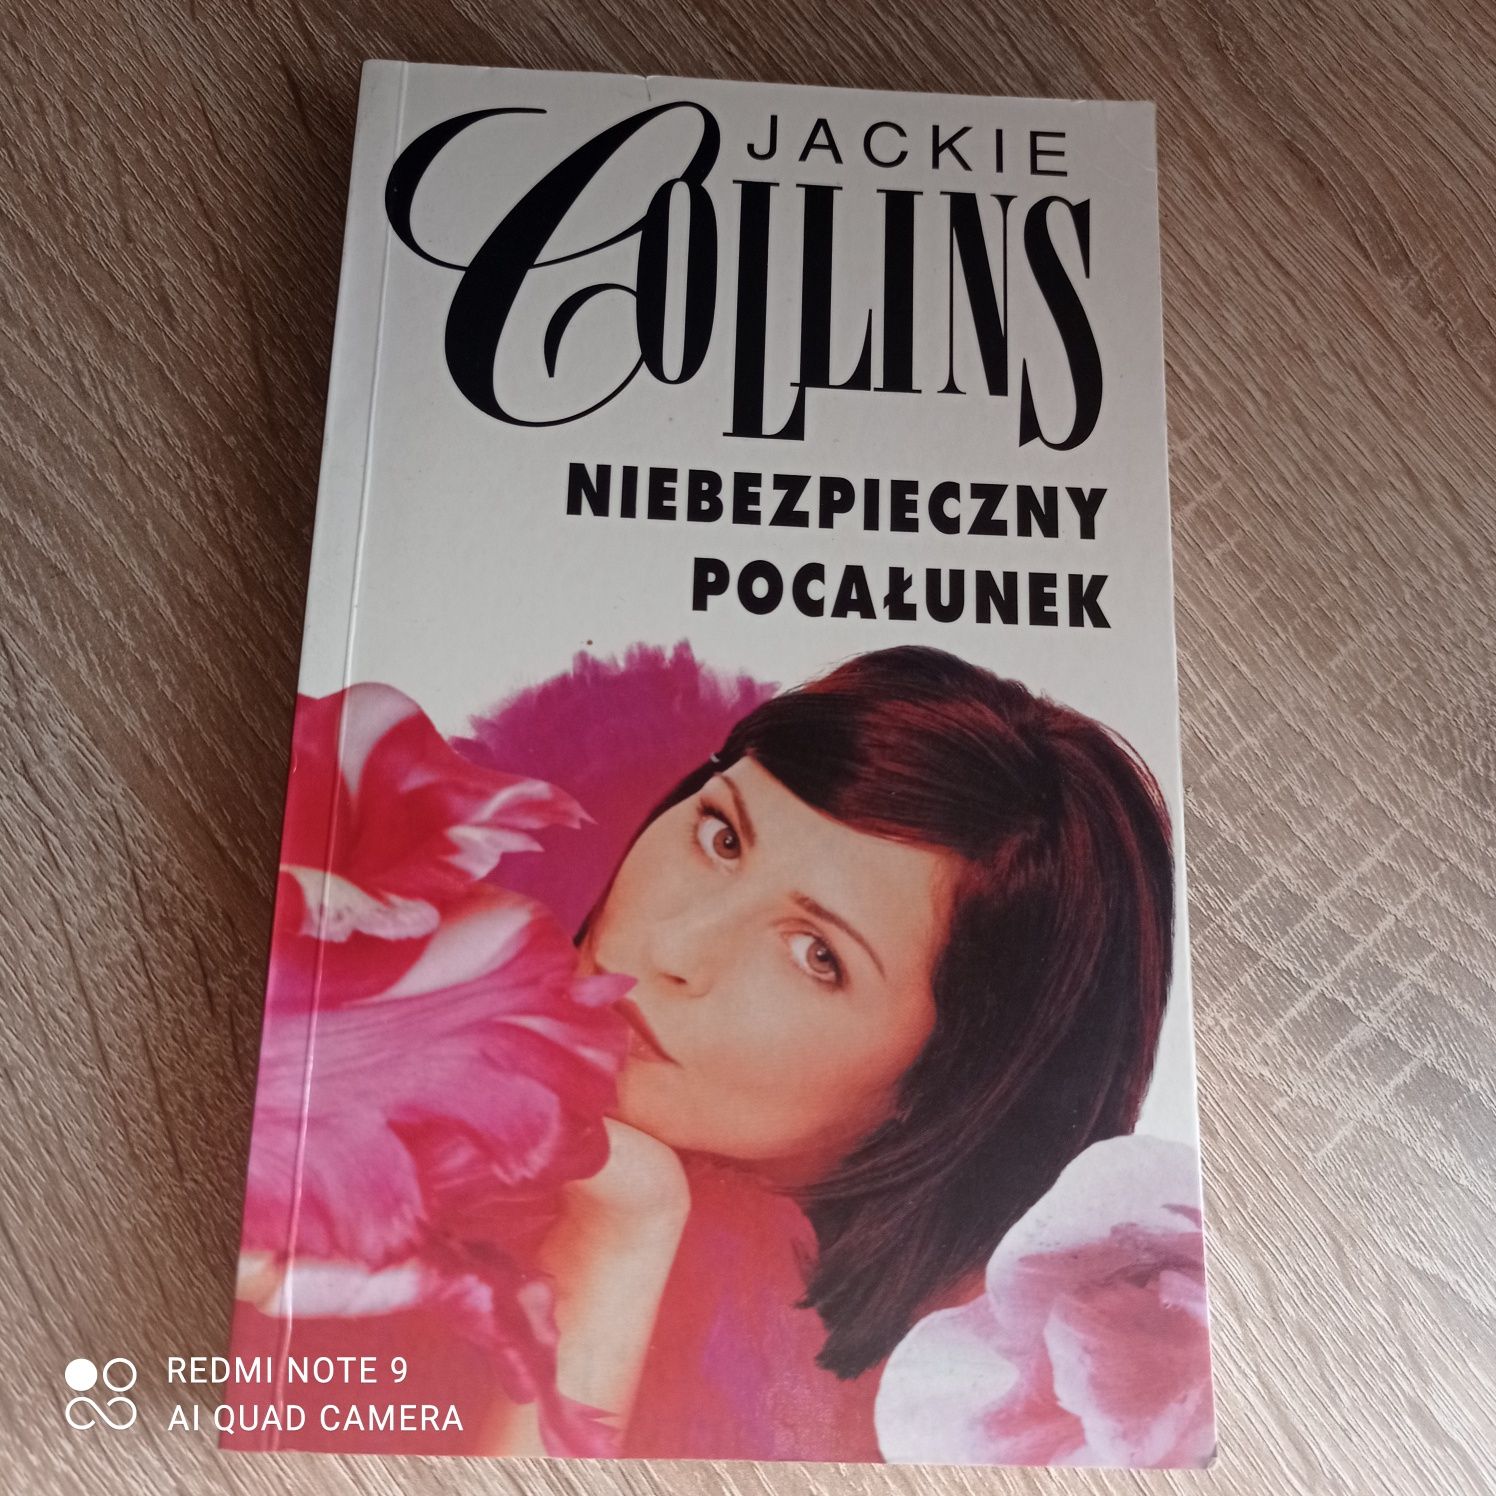 Jackie Collins Niebezpieczny pocałunek